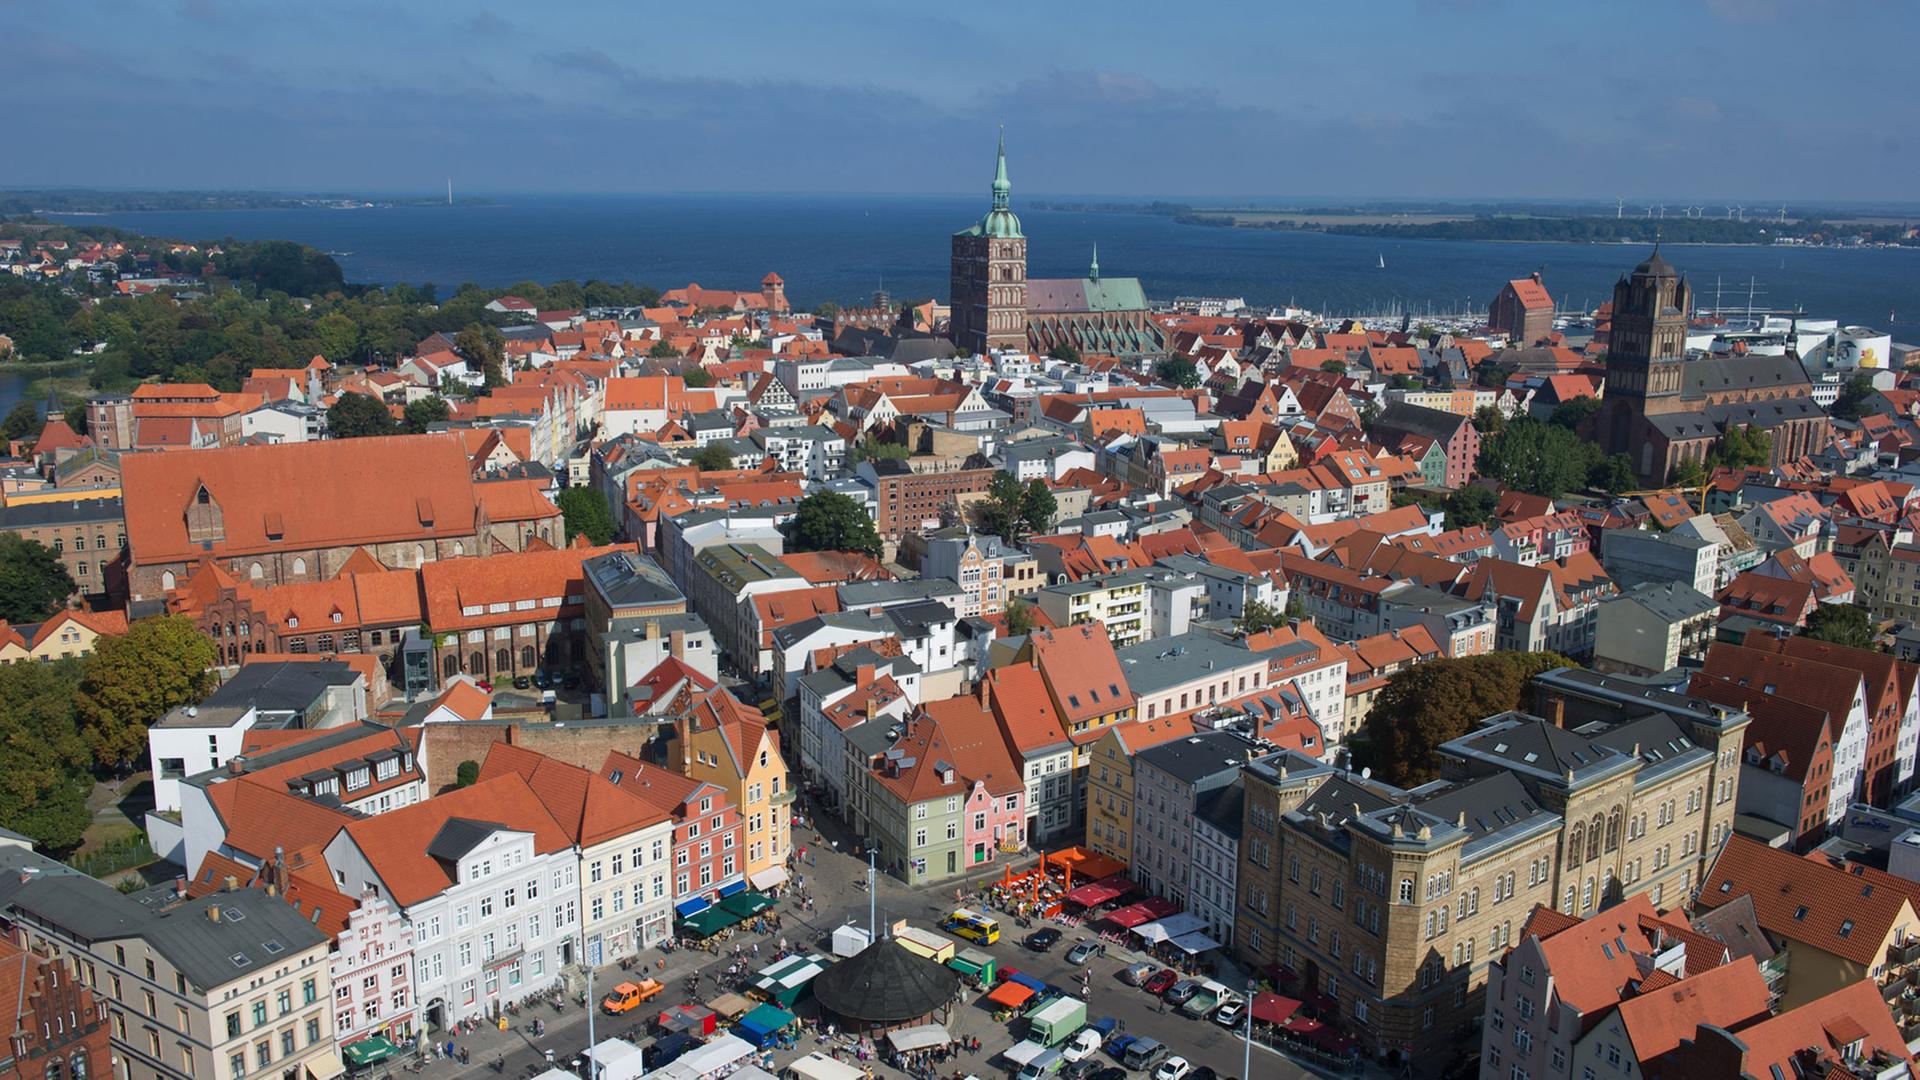 Blick auf die Altstadt von Stralsund